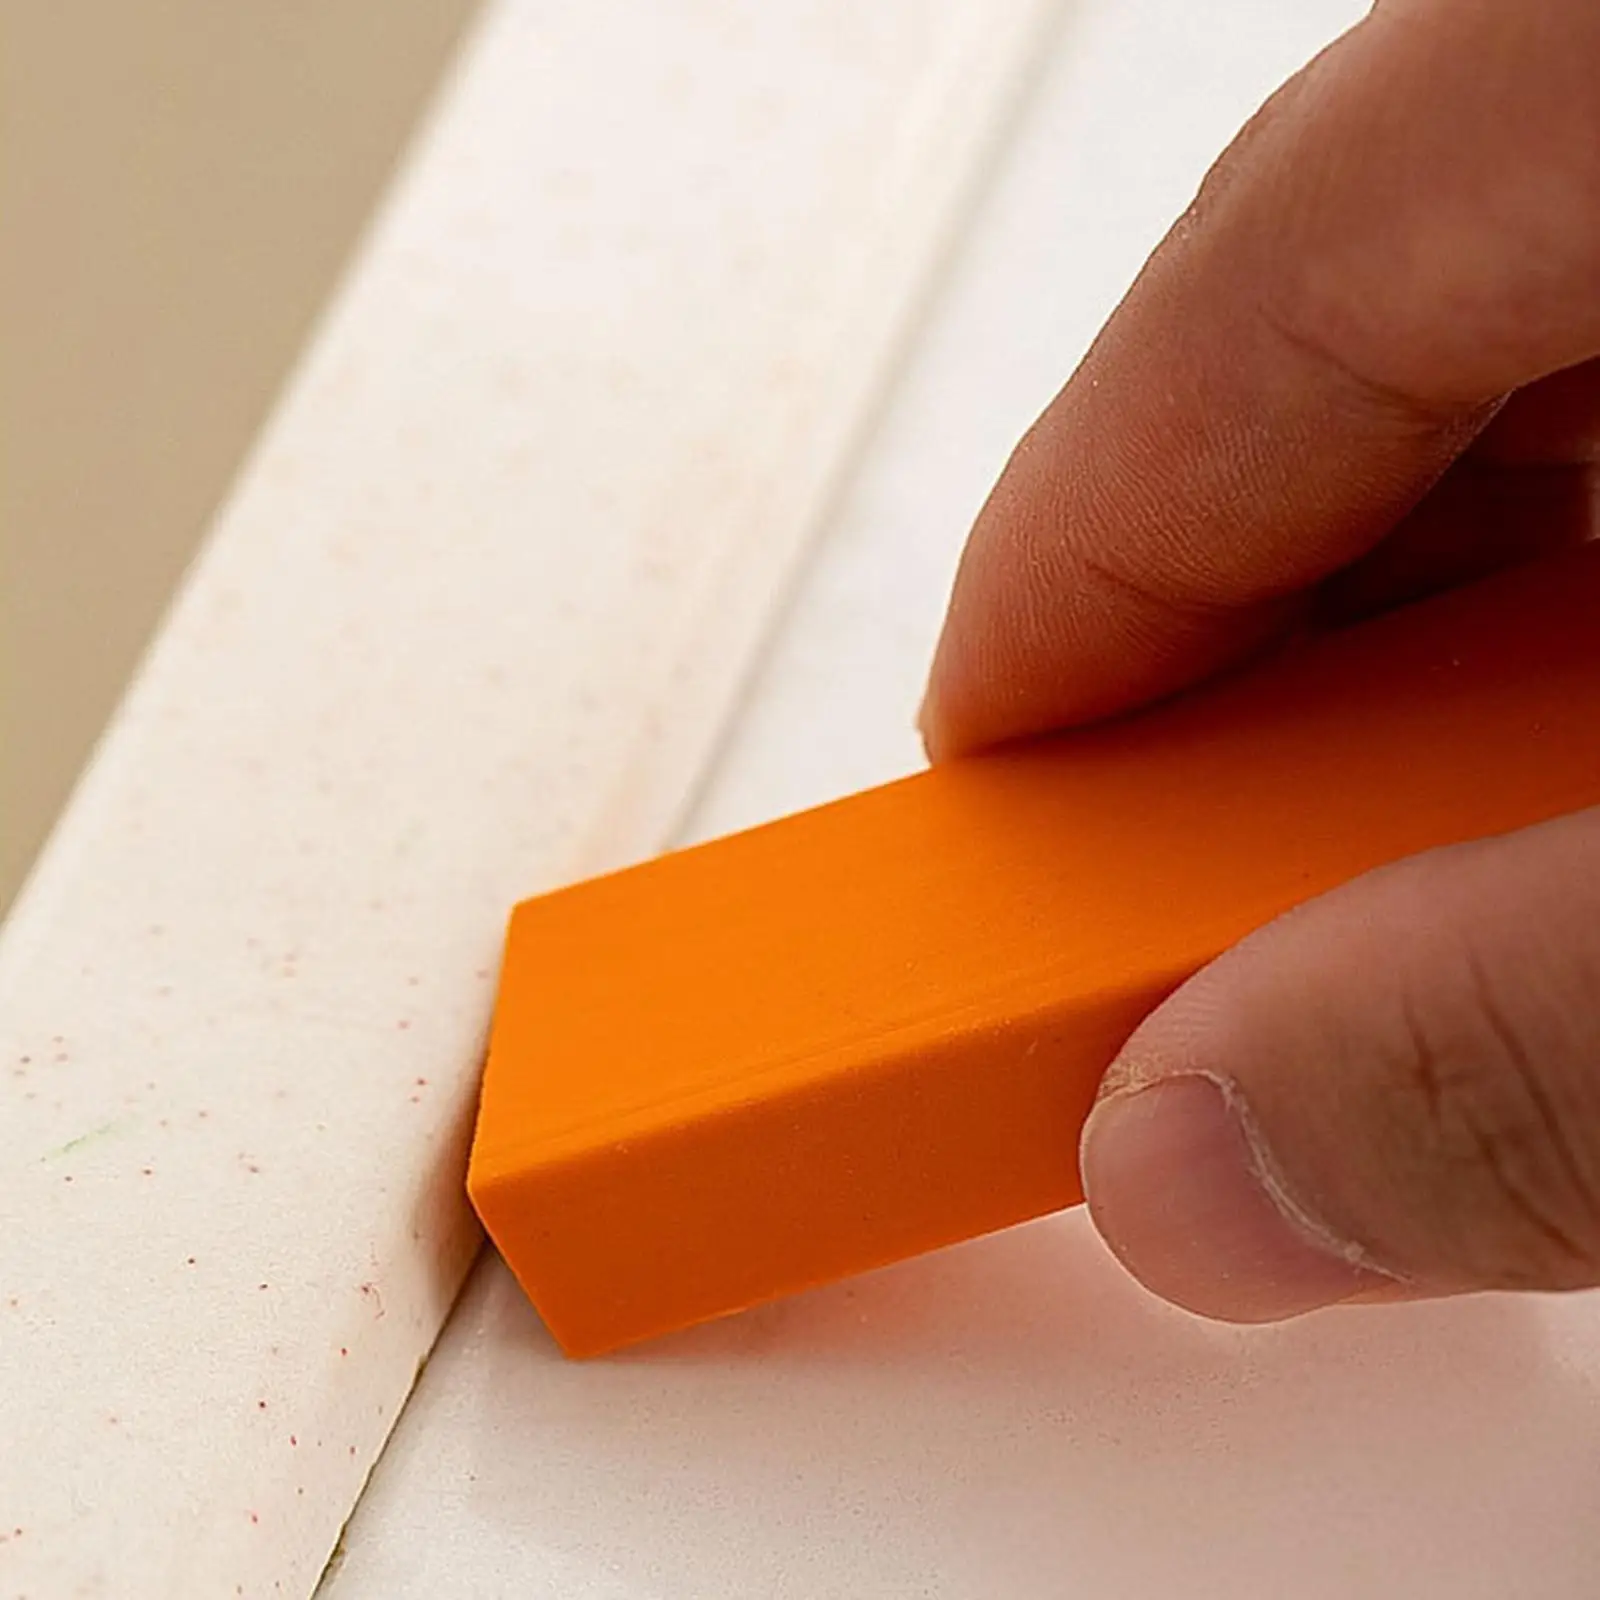 Rust Eraser Decontamination Artifact Eraser Orange Easy Limescale Eraser Stainless Surface Kitchen Bathroom Glass